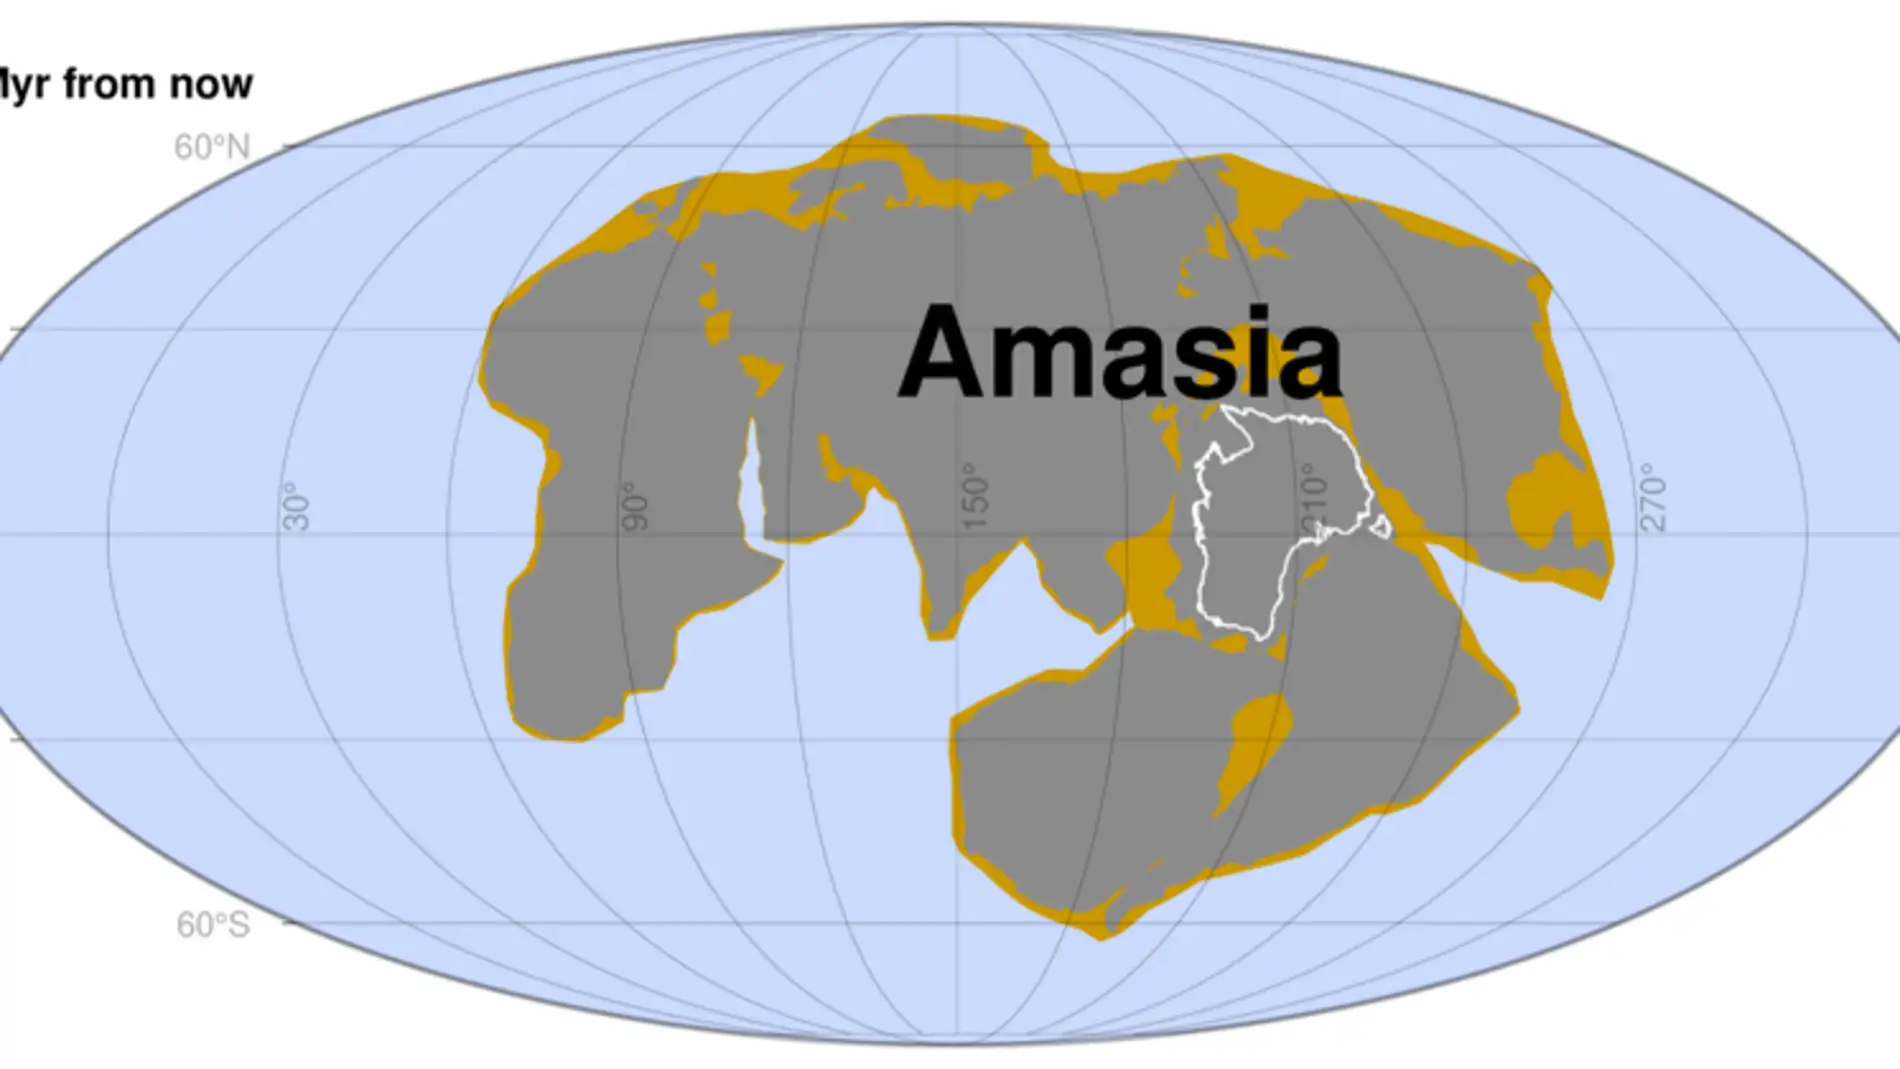 Amasia, el supercontinente que se creará en 200 millones de años